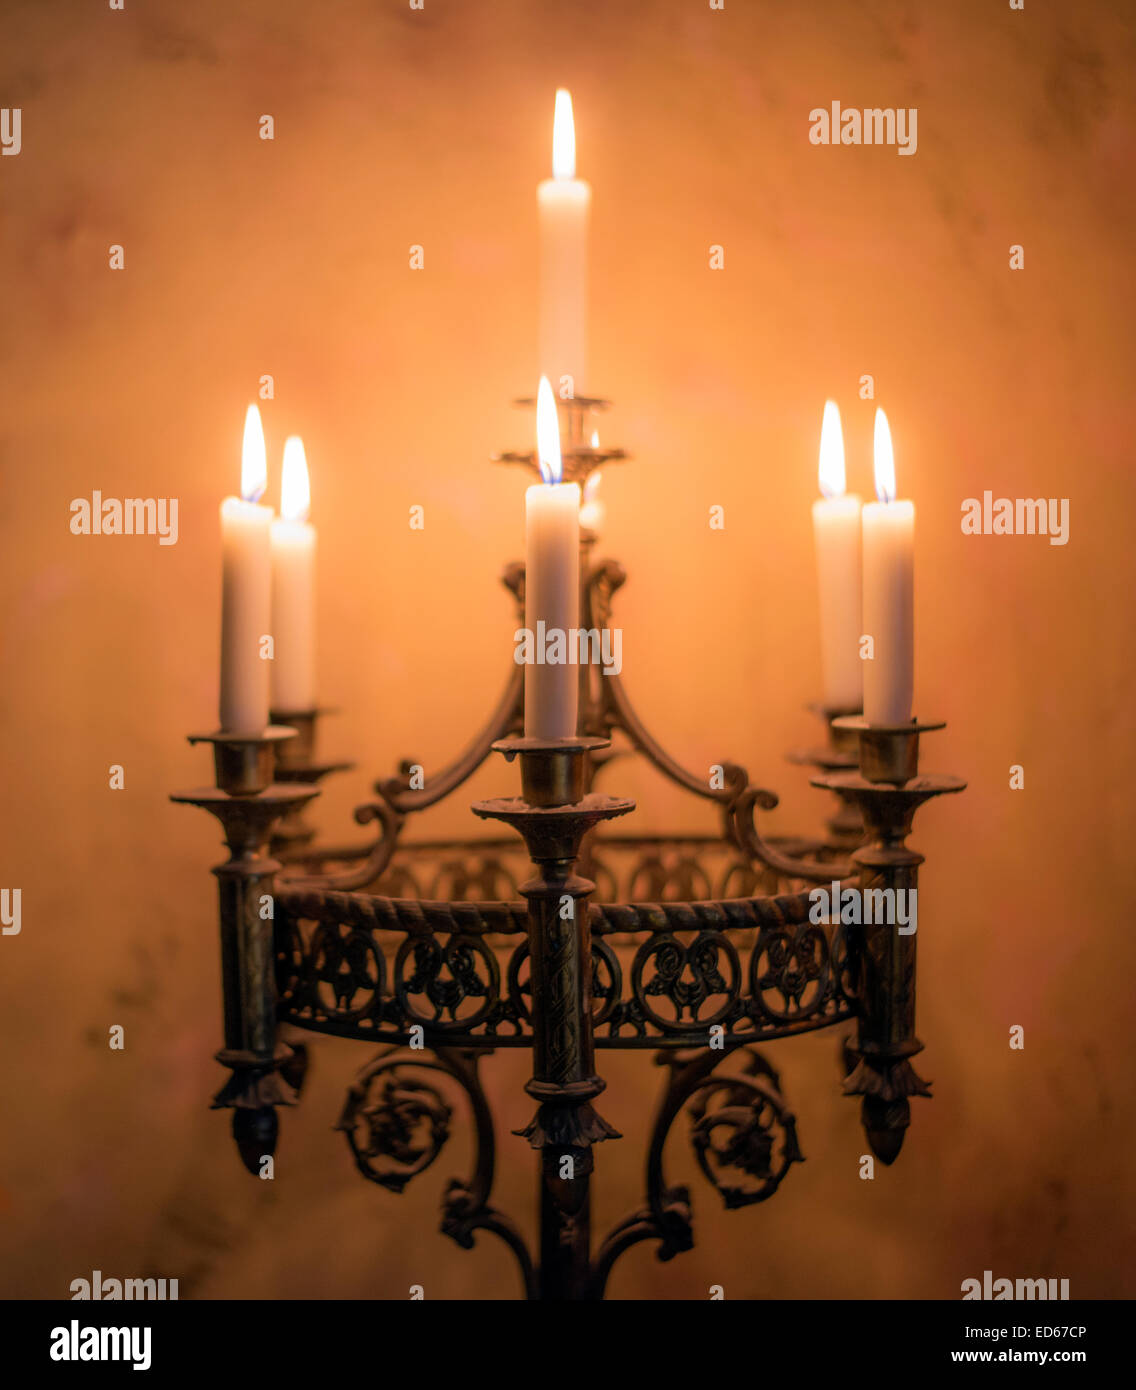 Antica chiesa cattolica romana lampadario con 7 candele accese Foto stock -  Alamy